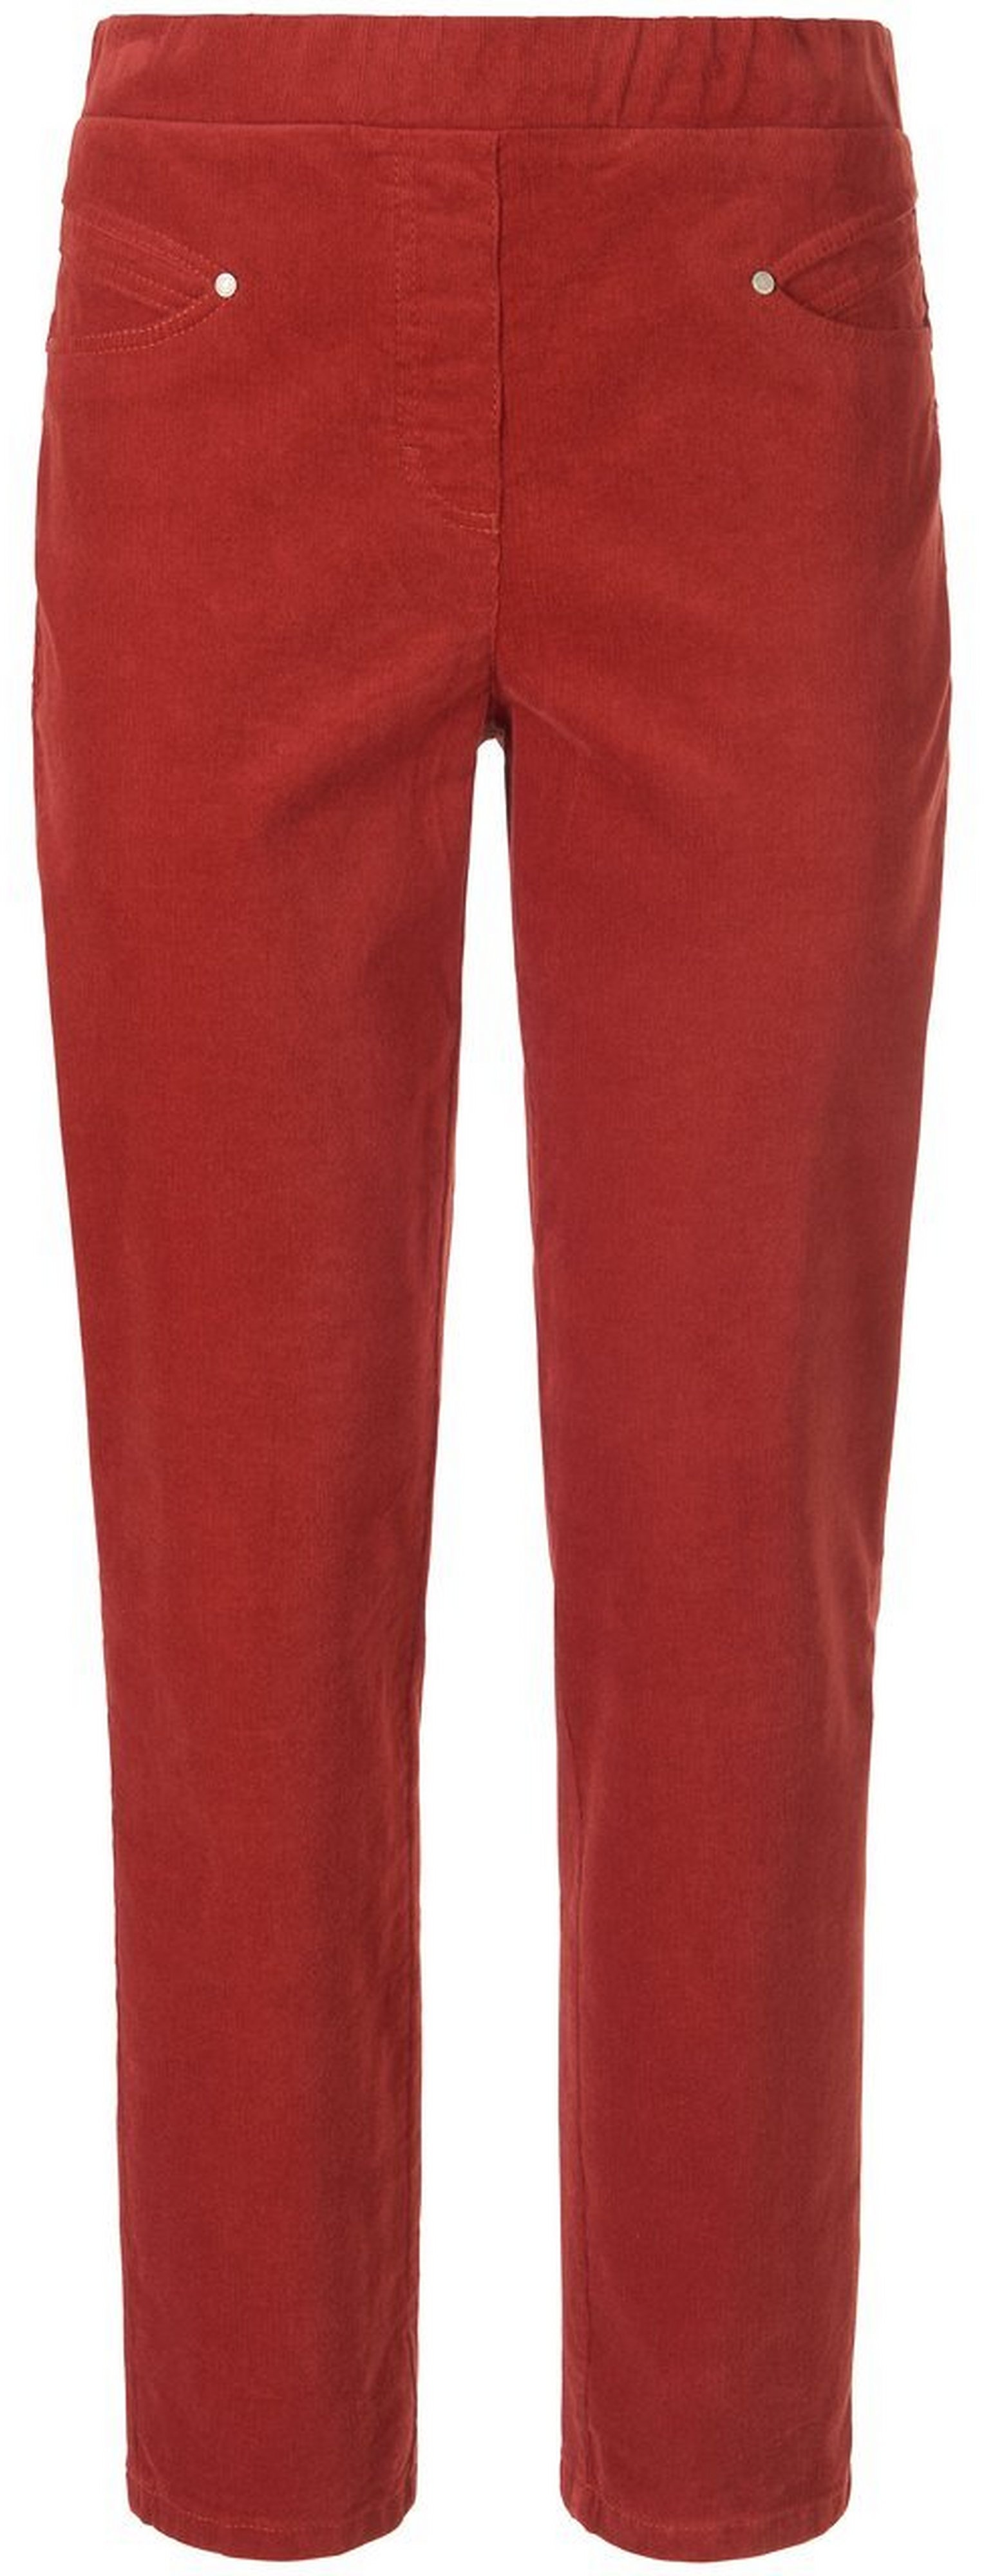 Le pantalon en velours milleraies  Peter Hahn rouge